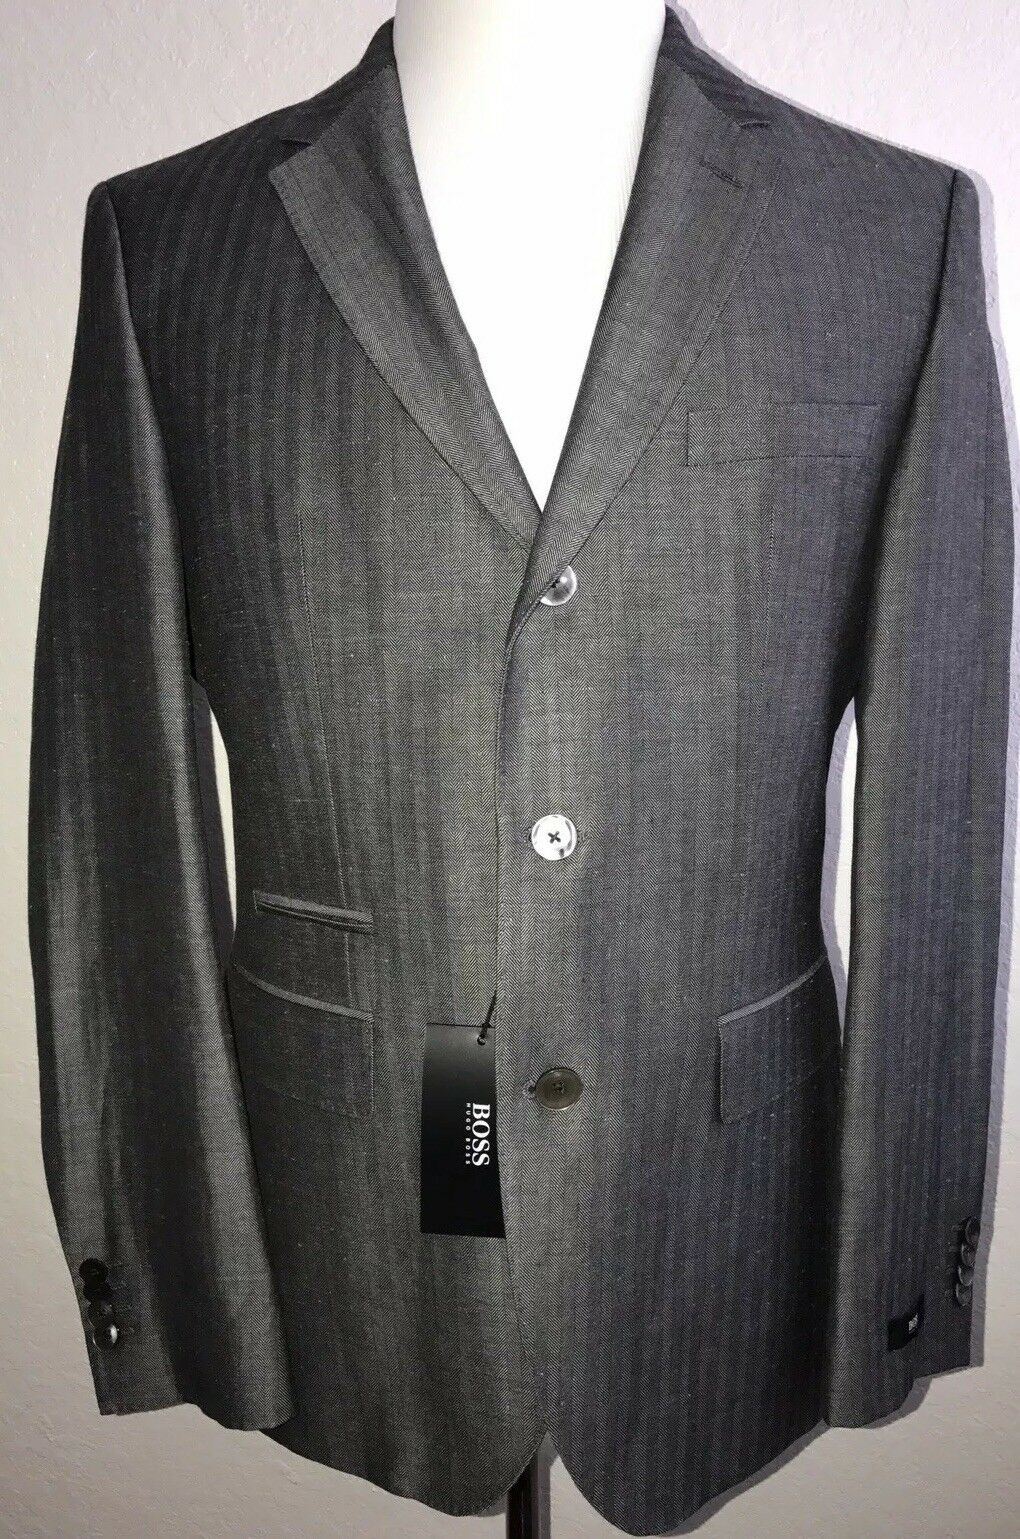 NWT $645 Boss Hugo Boss Johnston Wool - Linen Med Gray Sport Coat Jacket 38R US